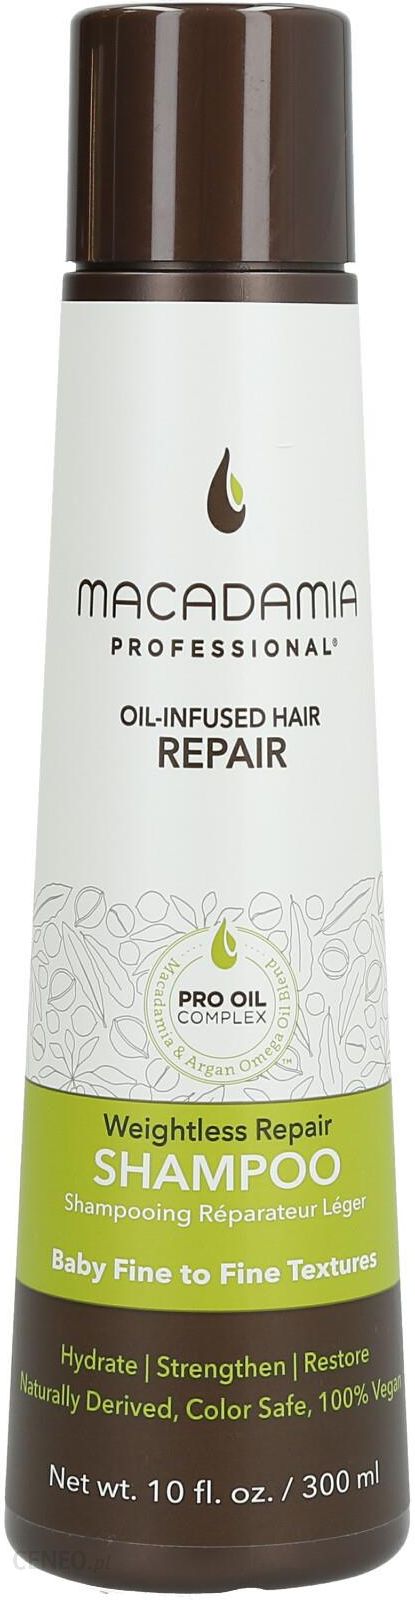 macadamia rejuvenating szampon nawilżający